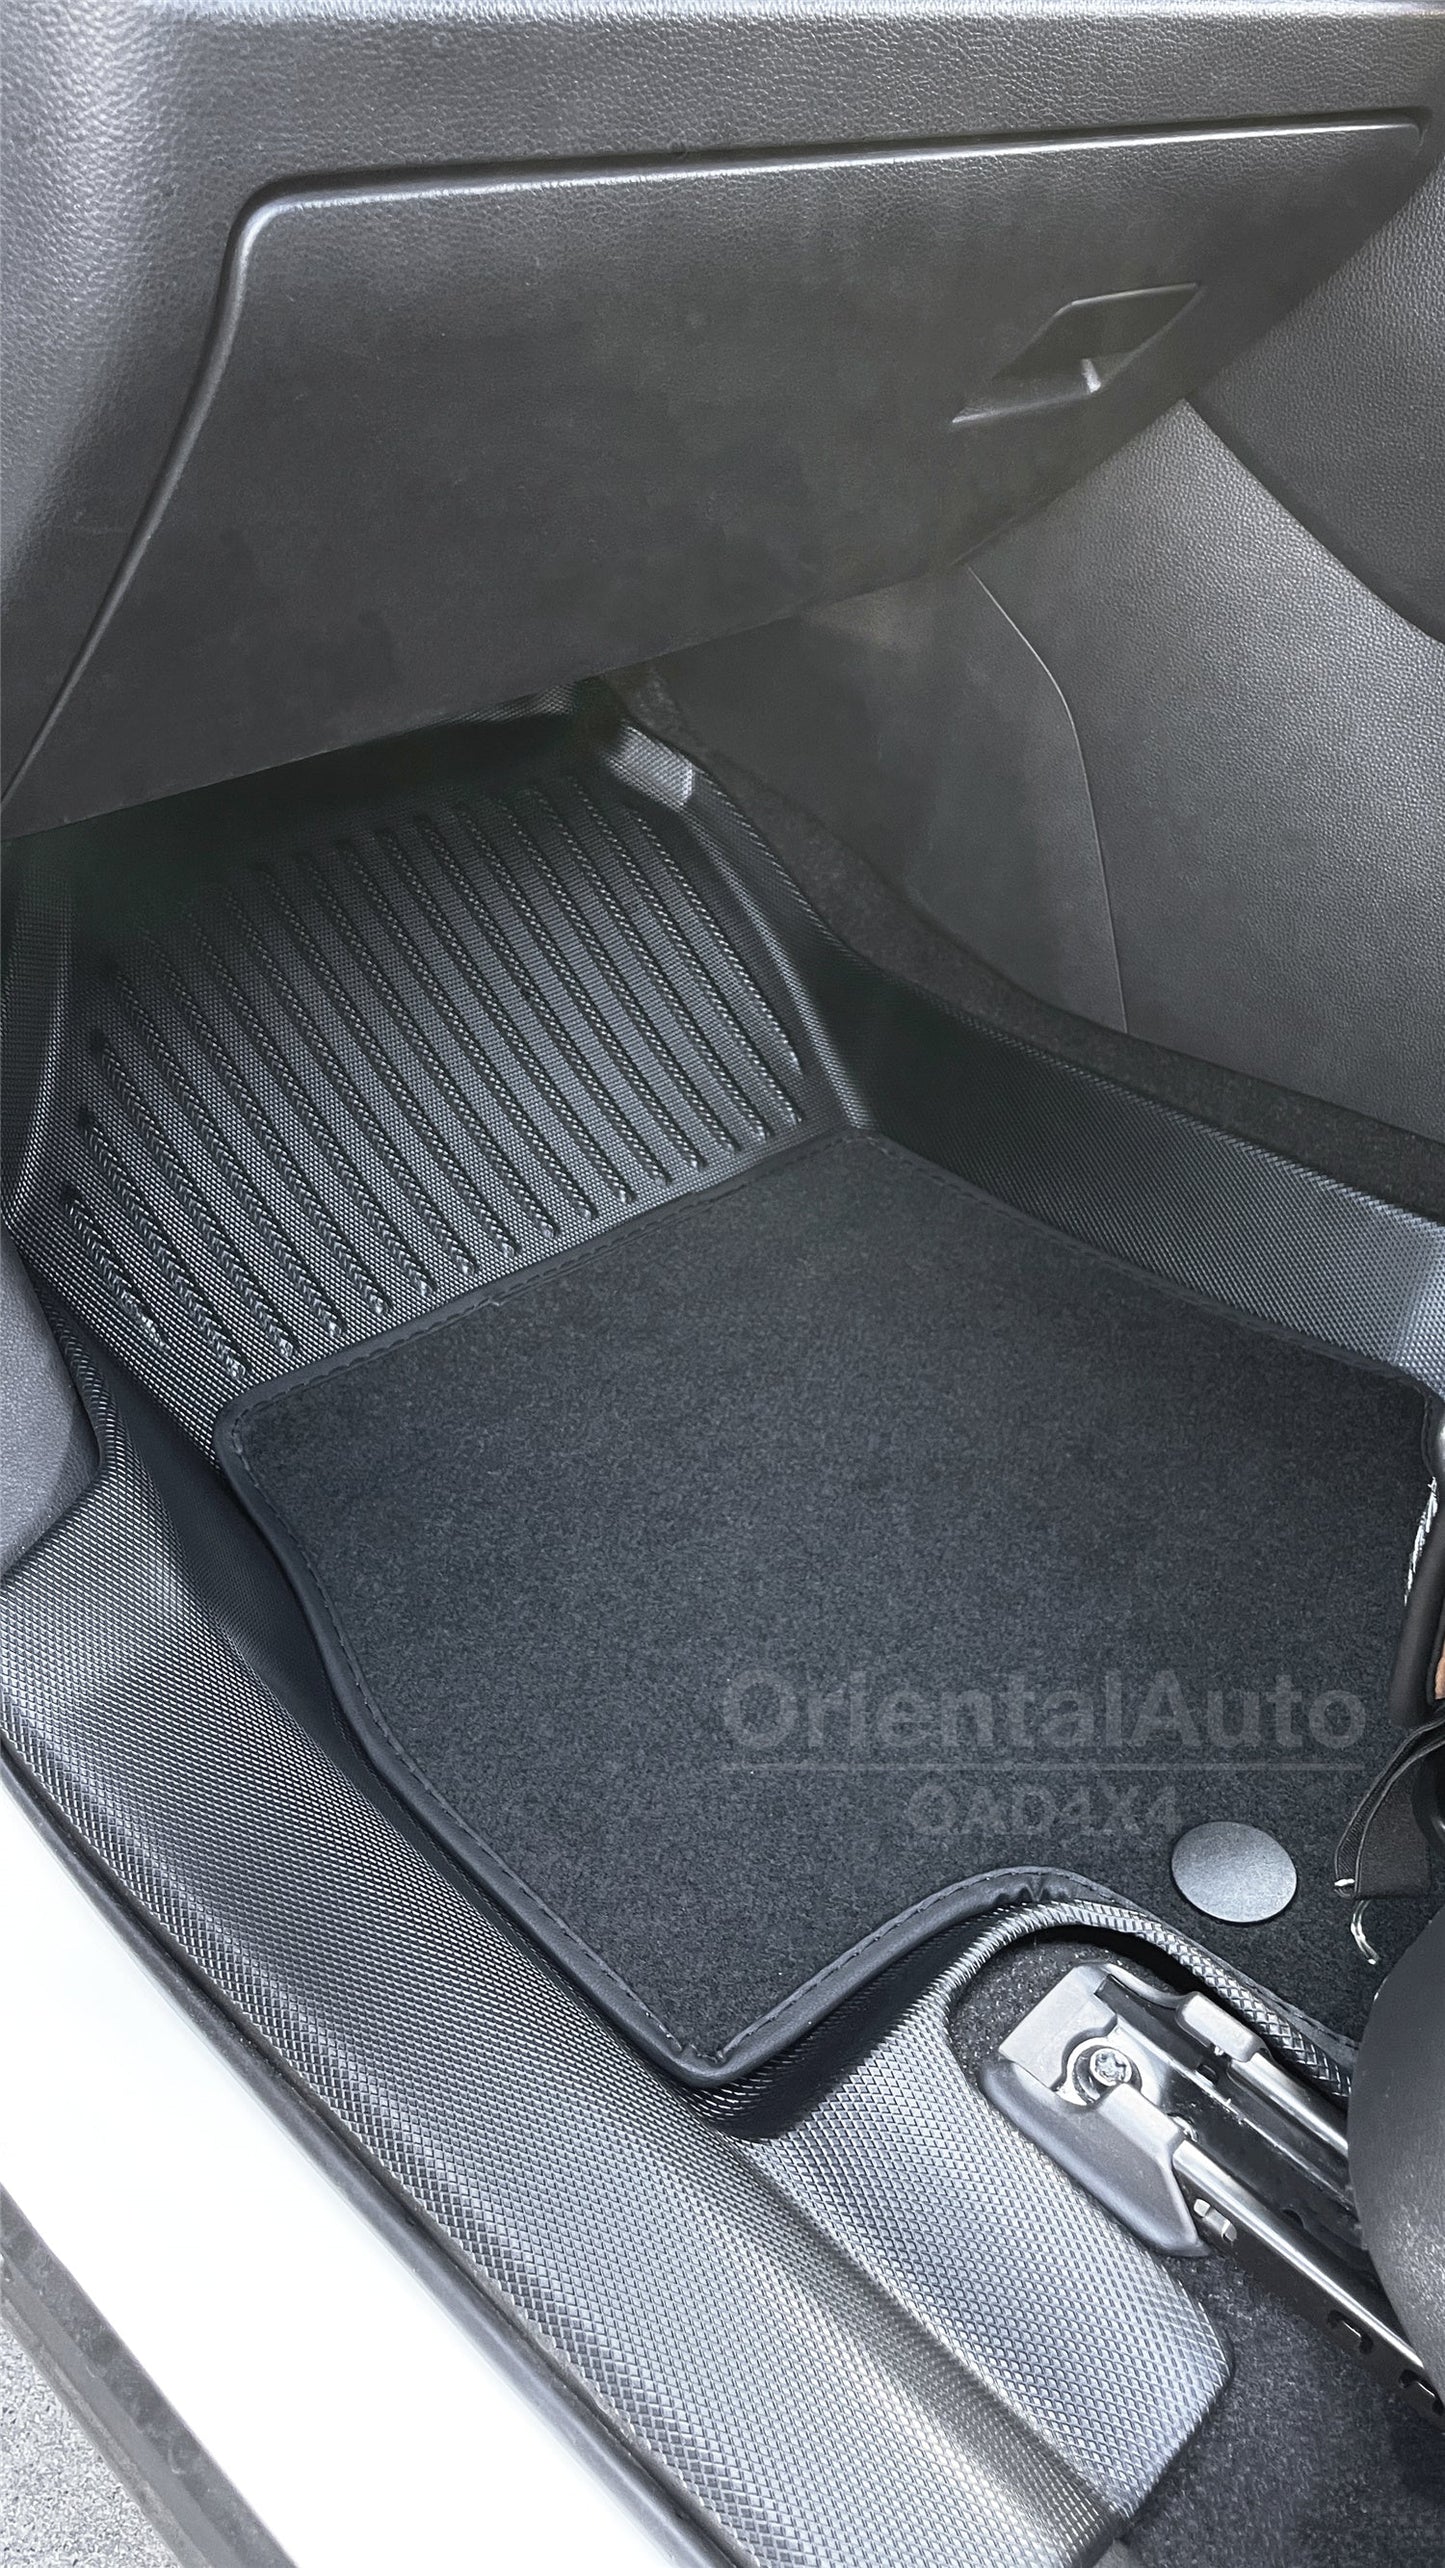 TPE 5D Floor Mats & 3D Cargo Mat for Toyota RAV4 2019-Onwards Tailored Door Sill Covered Car Floor Mat Liner + Trunk Mat Boot Liner